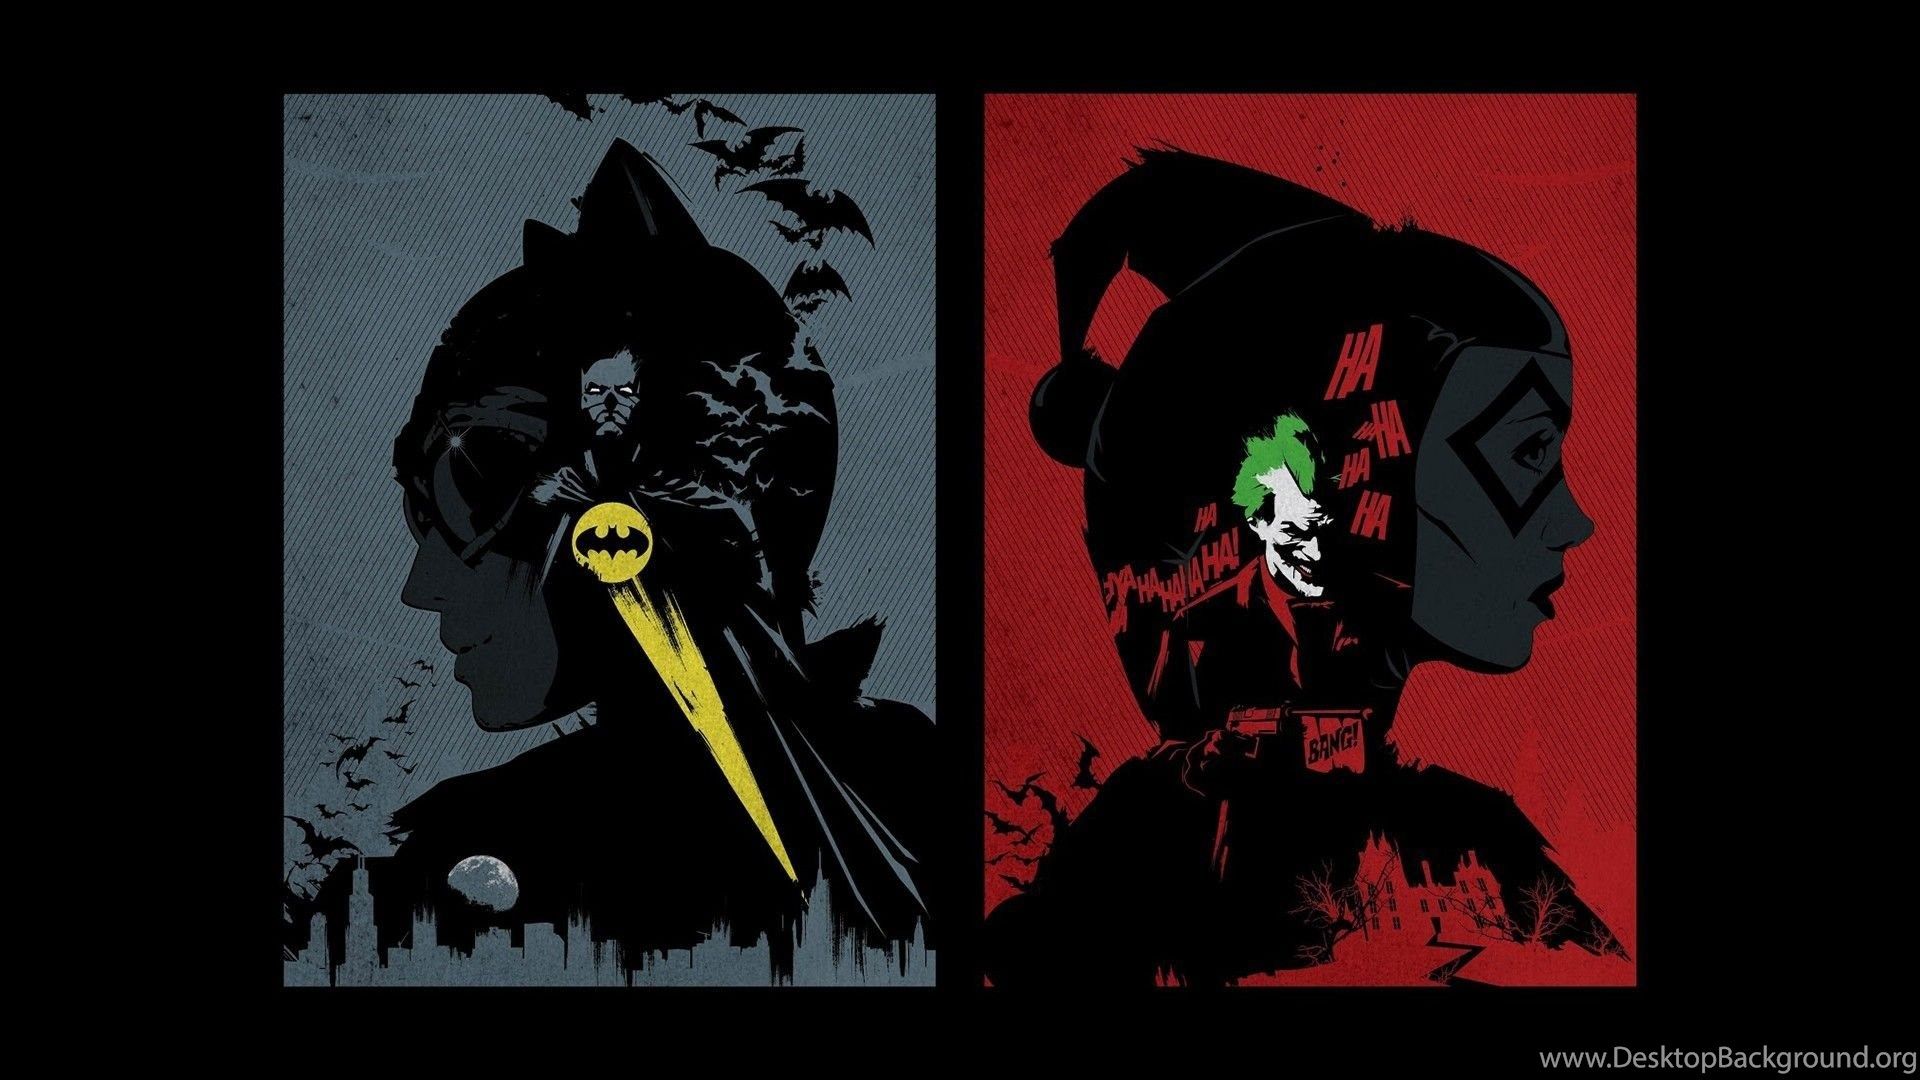 Batman DC Comics Comics The Joker Harley Quinn Catwoman Fan Art. Desktop Background